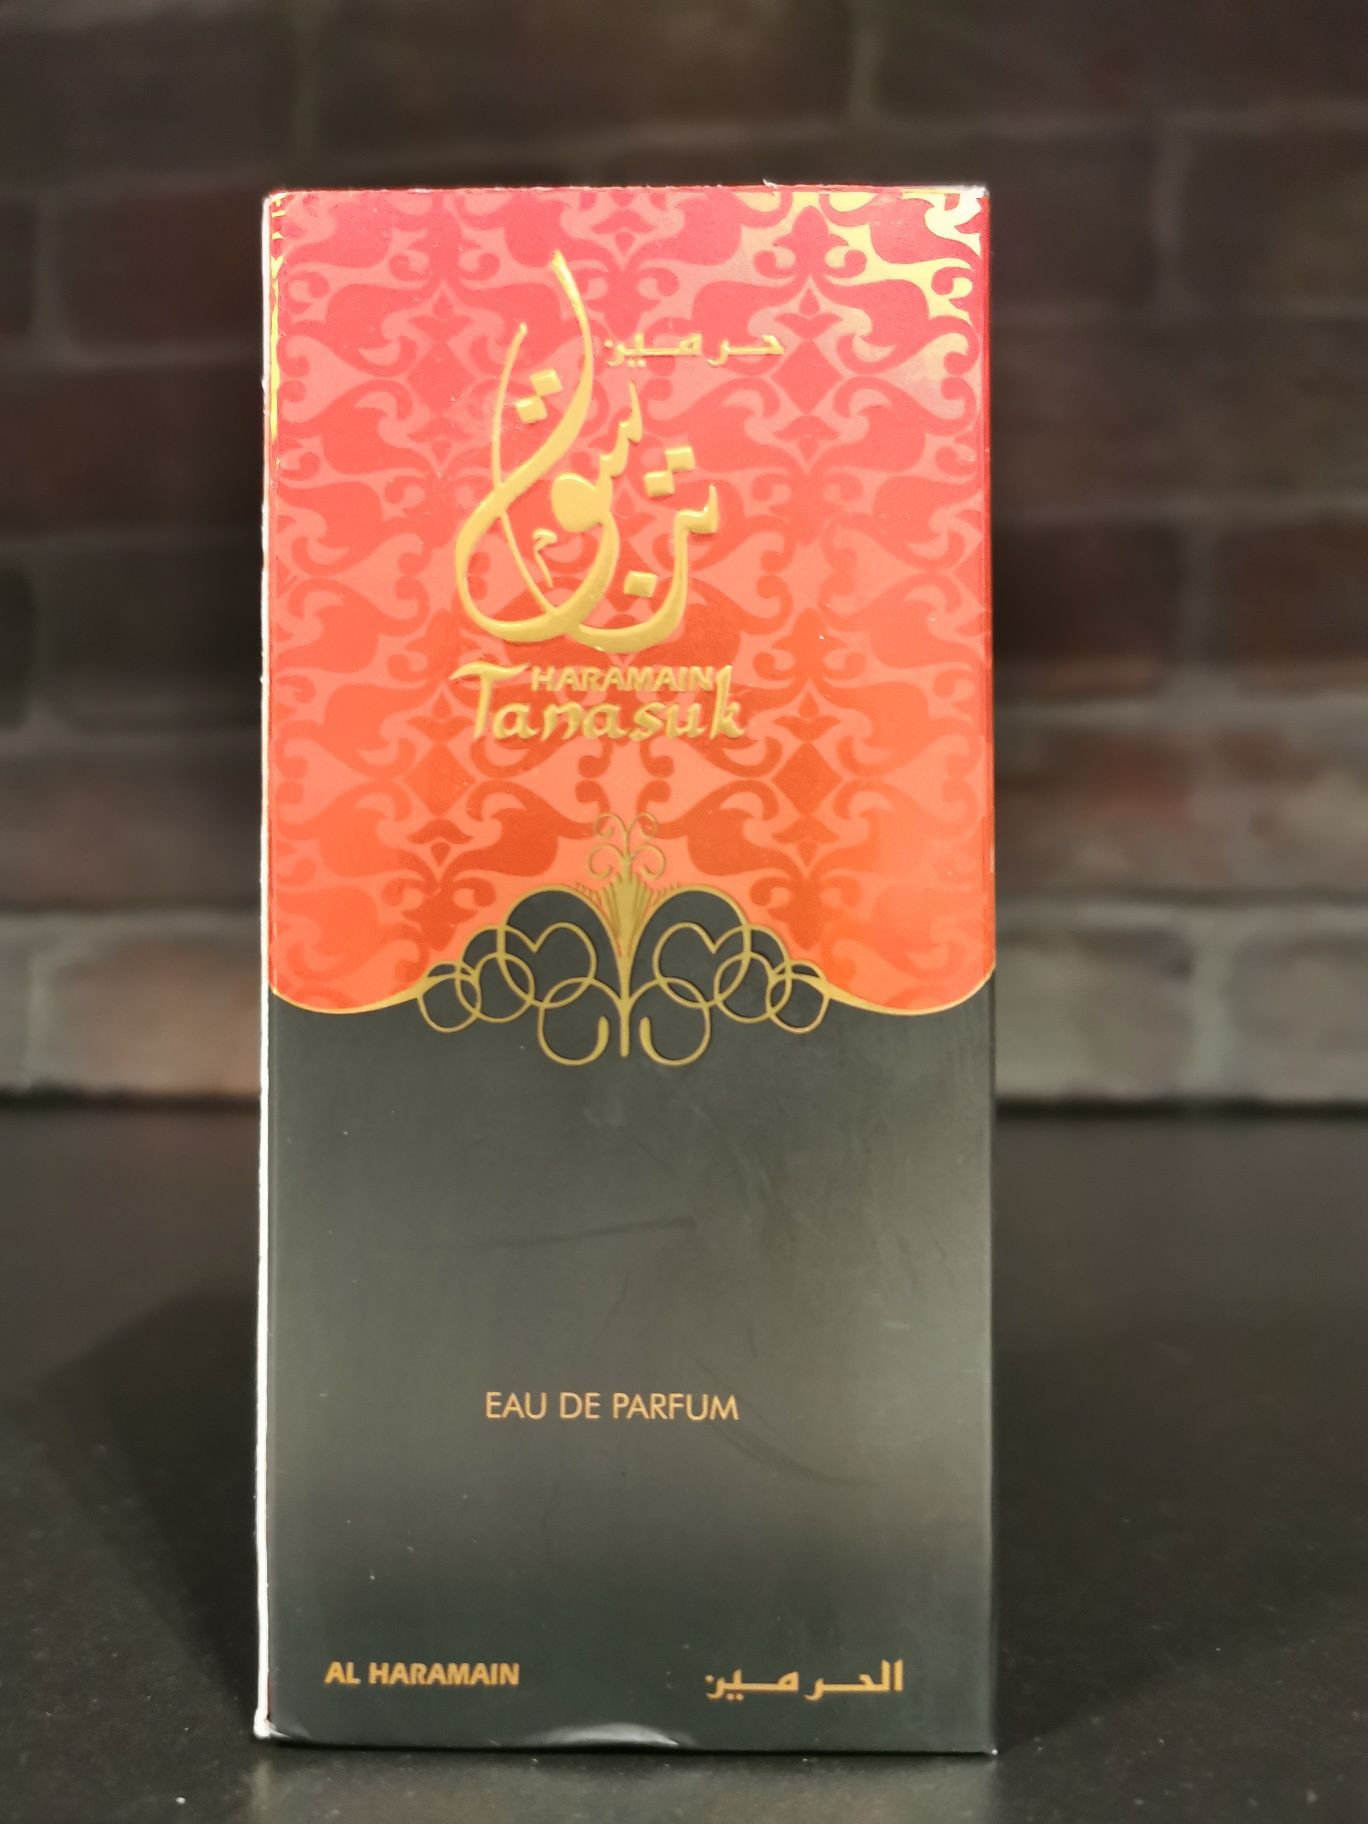 Al Haramain Tanasuk 100ml - perfuma z Dubaju